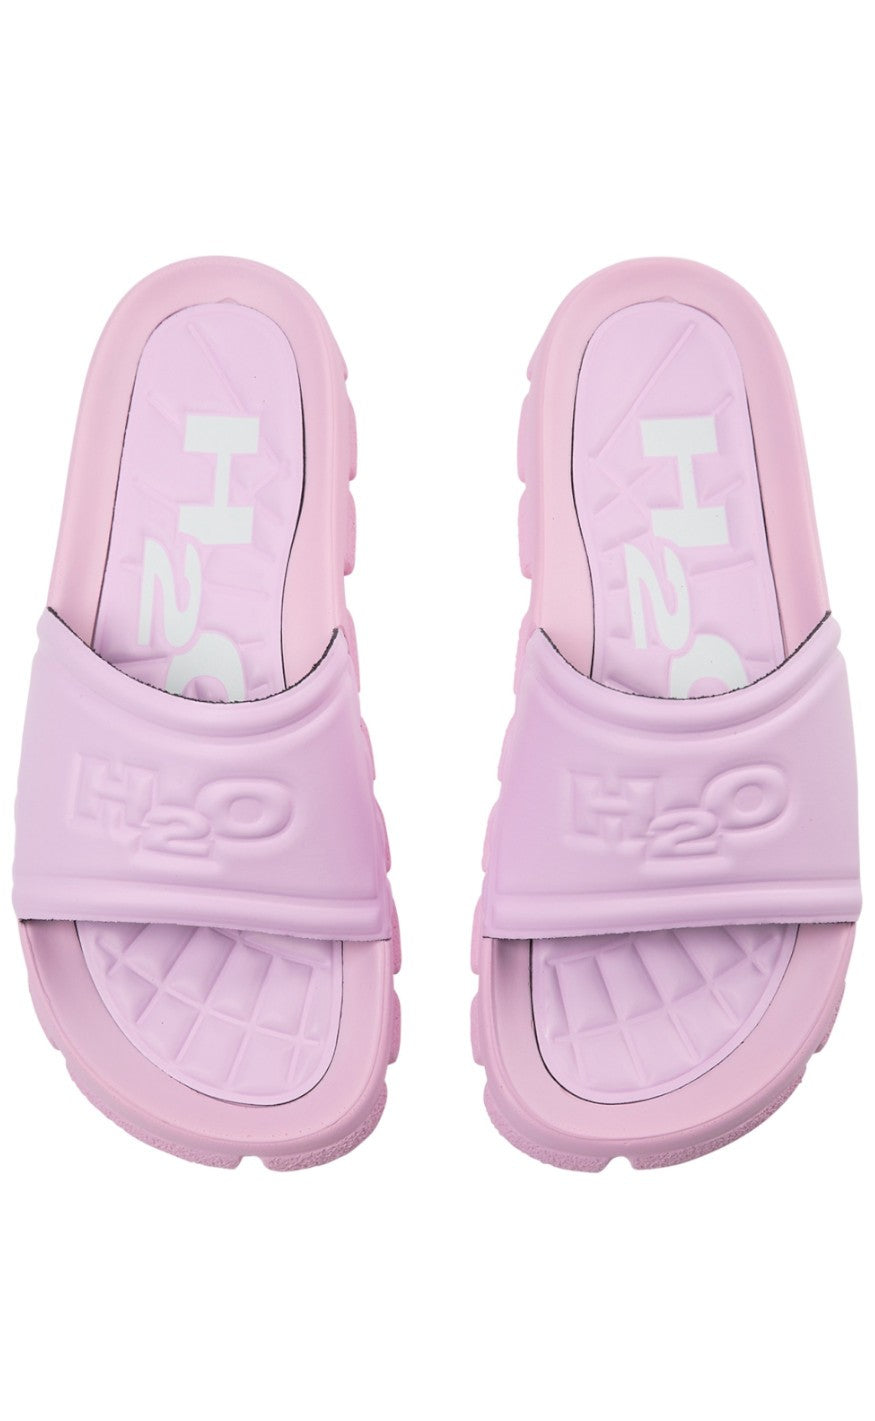 12: H2O Sandal - Trek - Light Pink